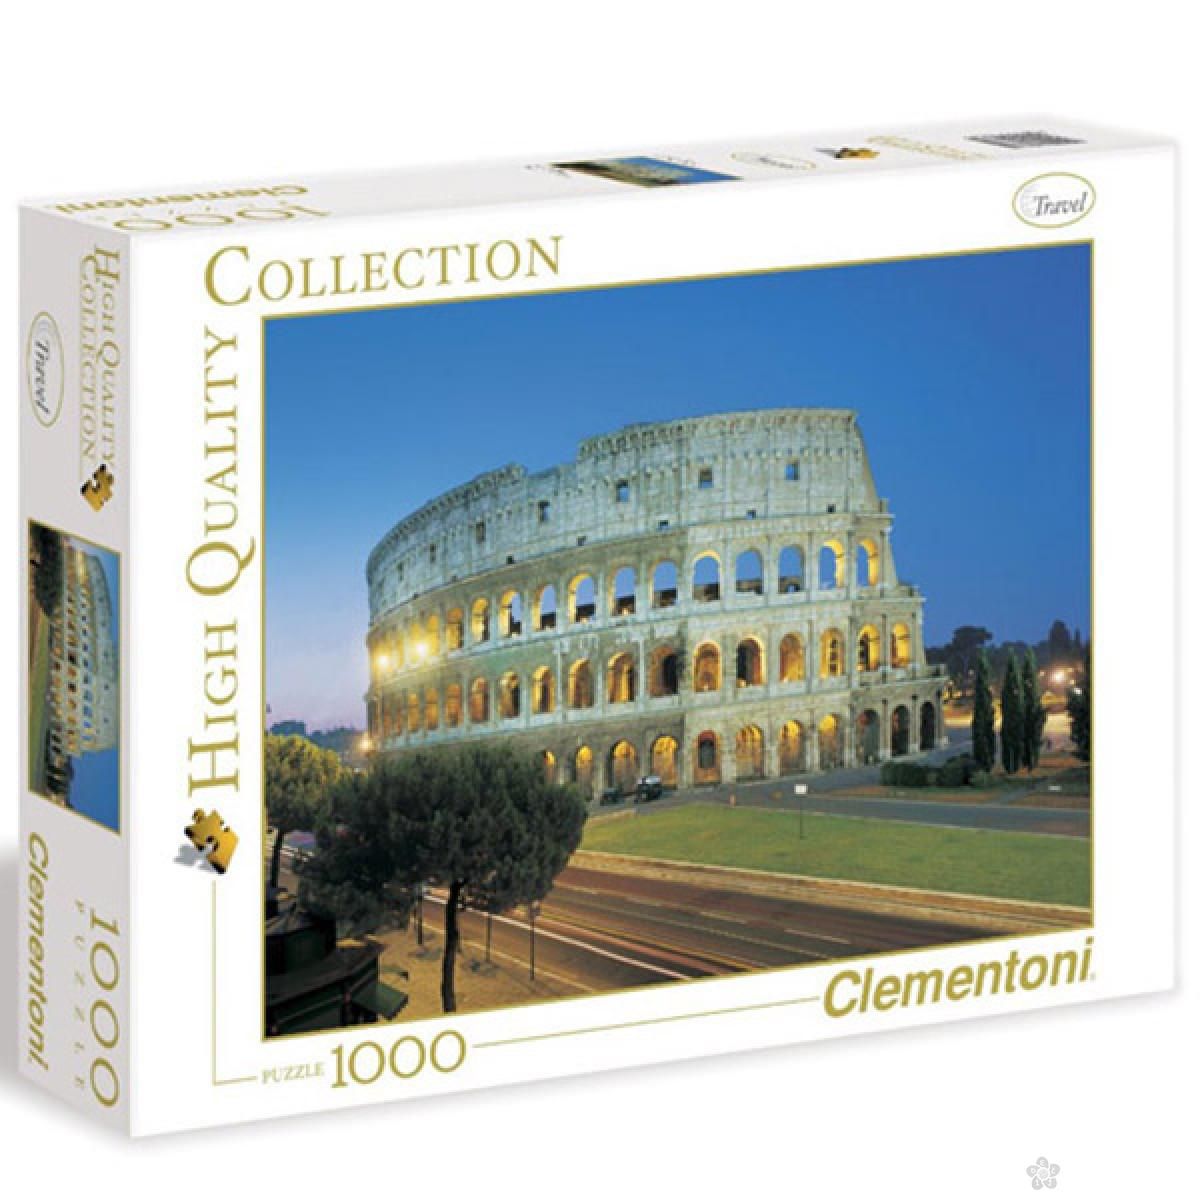 Puzzla Roma Colosseo 1000 delova Clementoni, 30768 